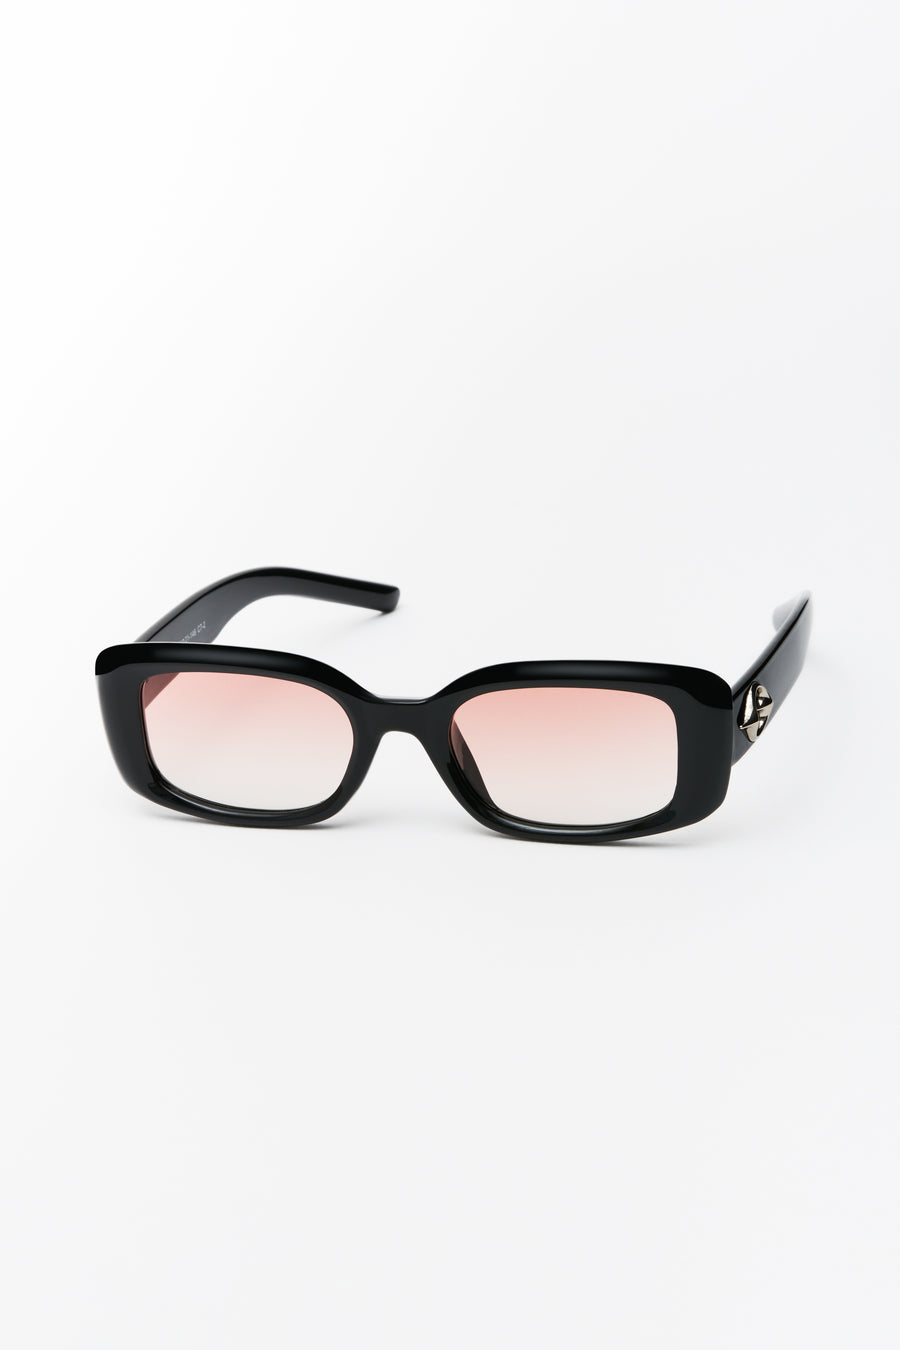 Bobby Sunglasses Black/Sunrise Lens